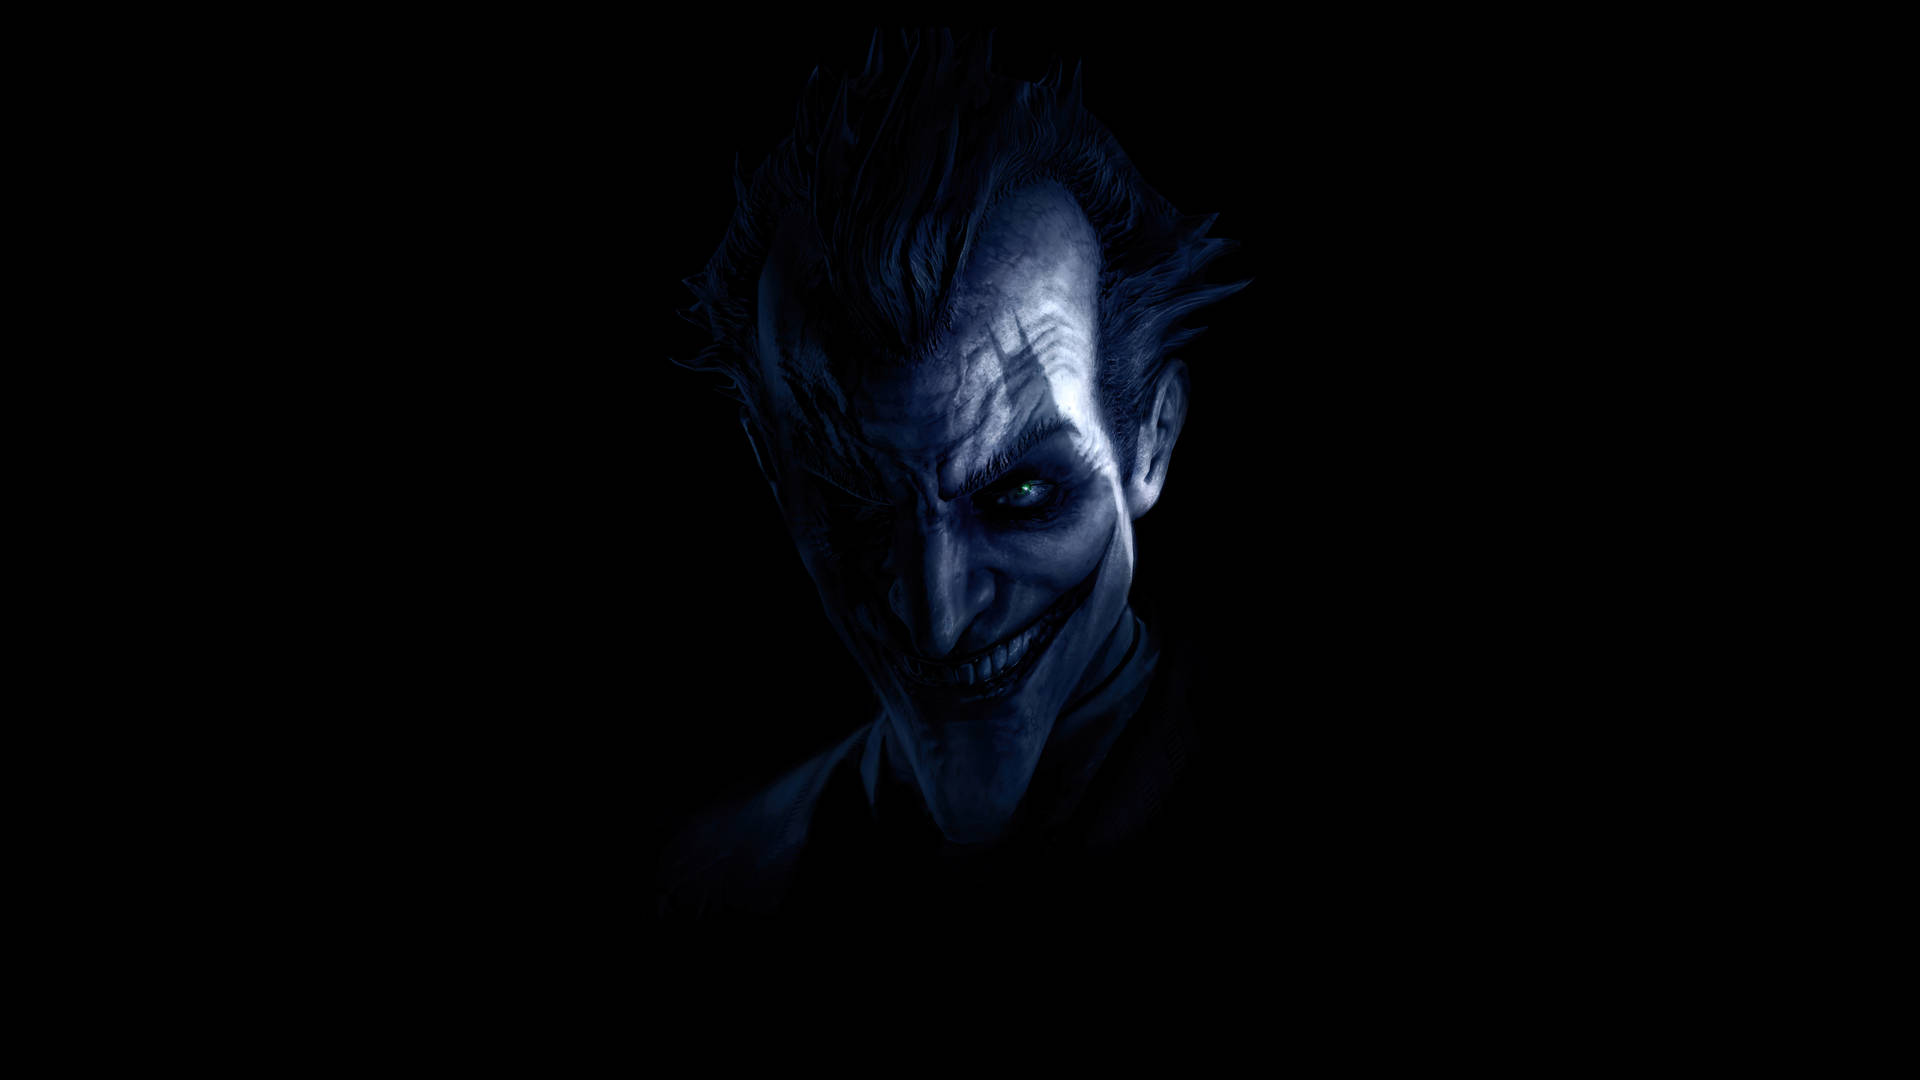 Sinister Black Ultra Hd Joker Smiling